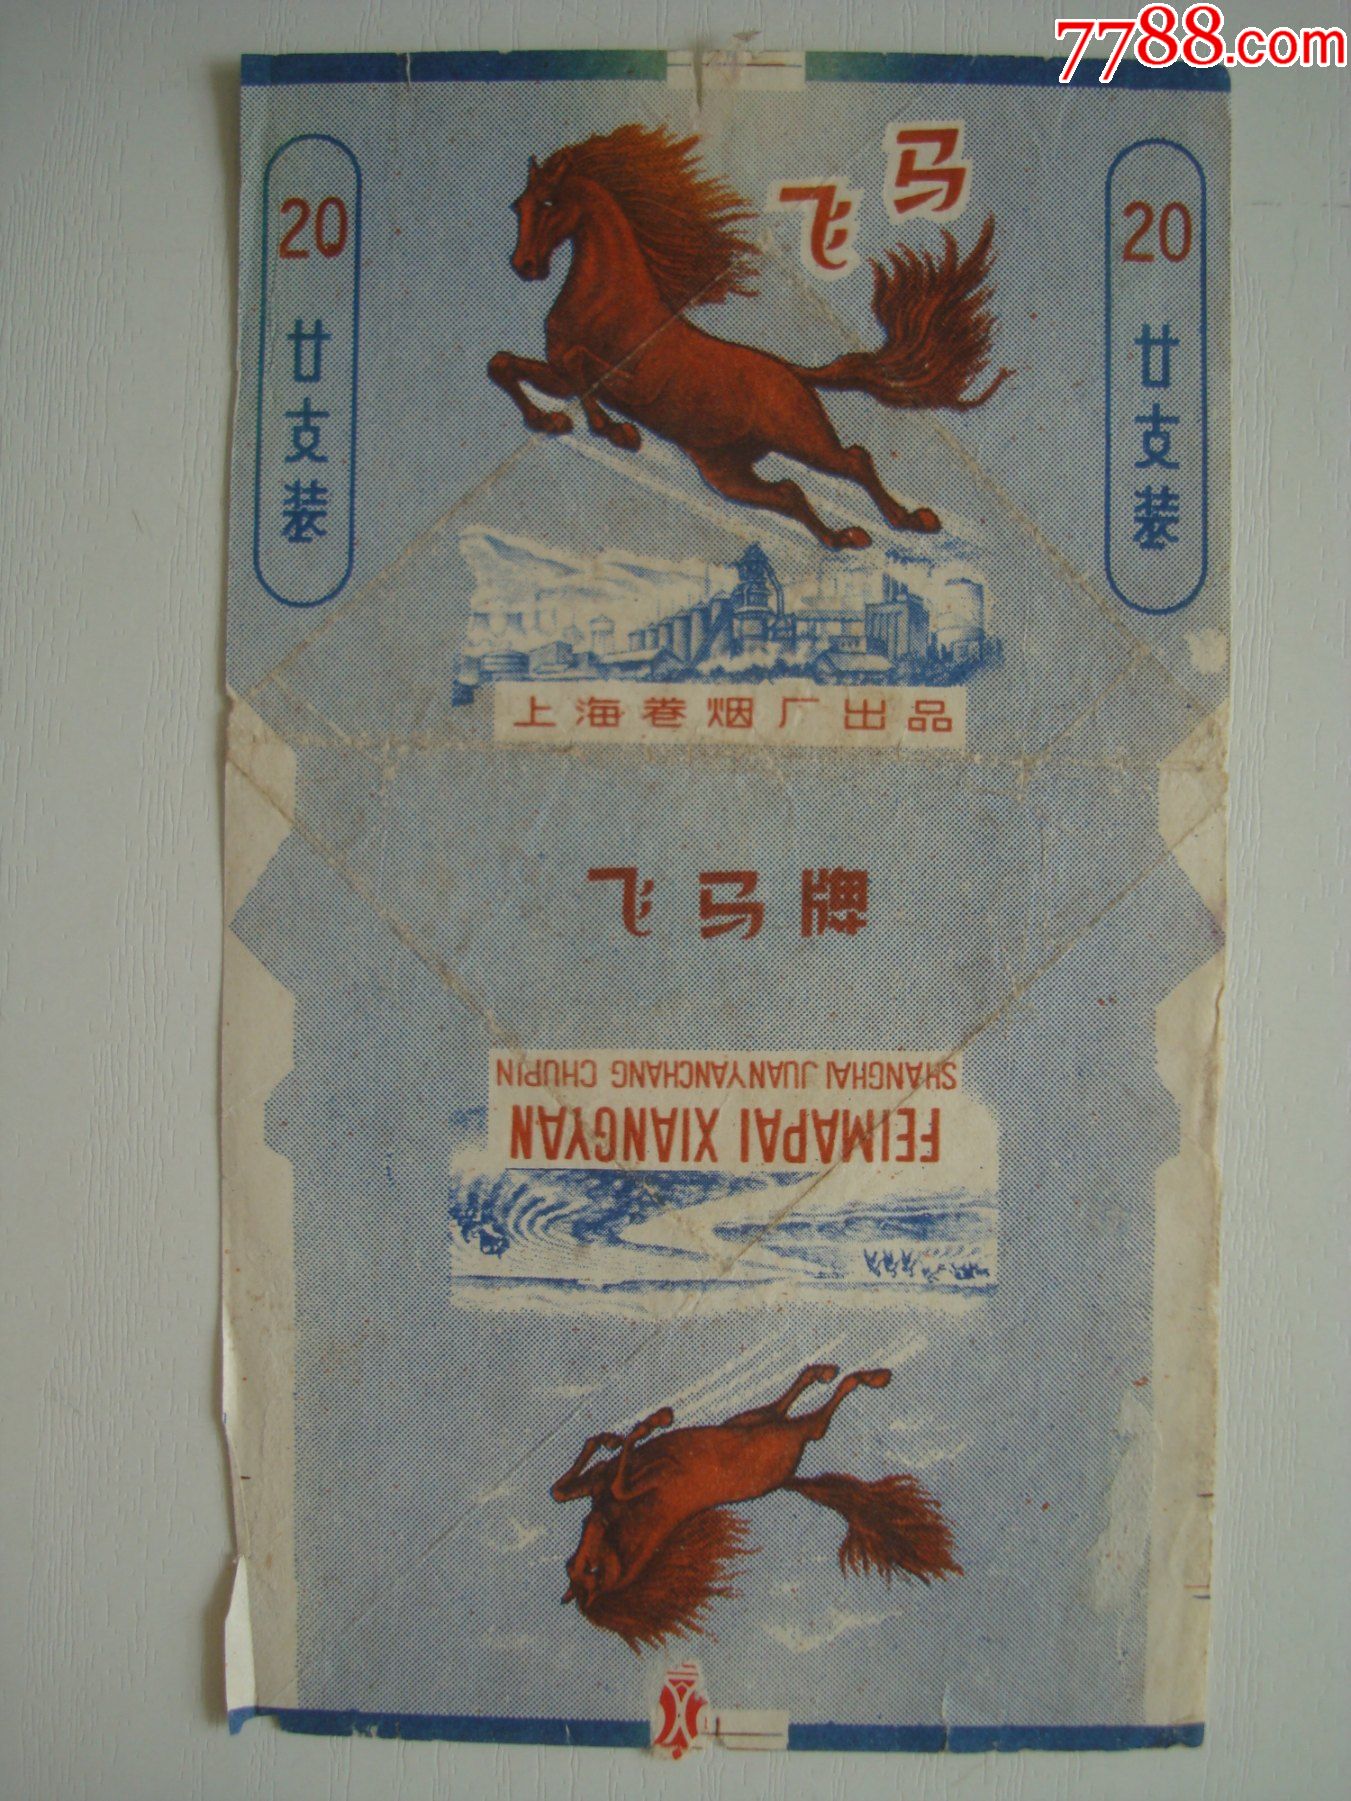 飞马――上海卷烟厂出品――70s标